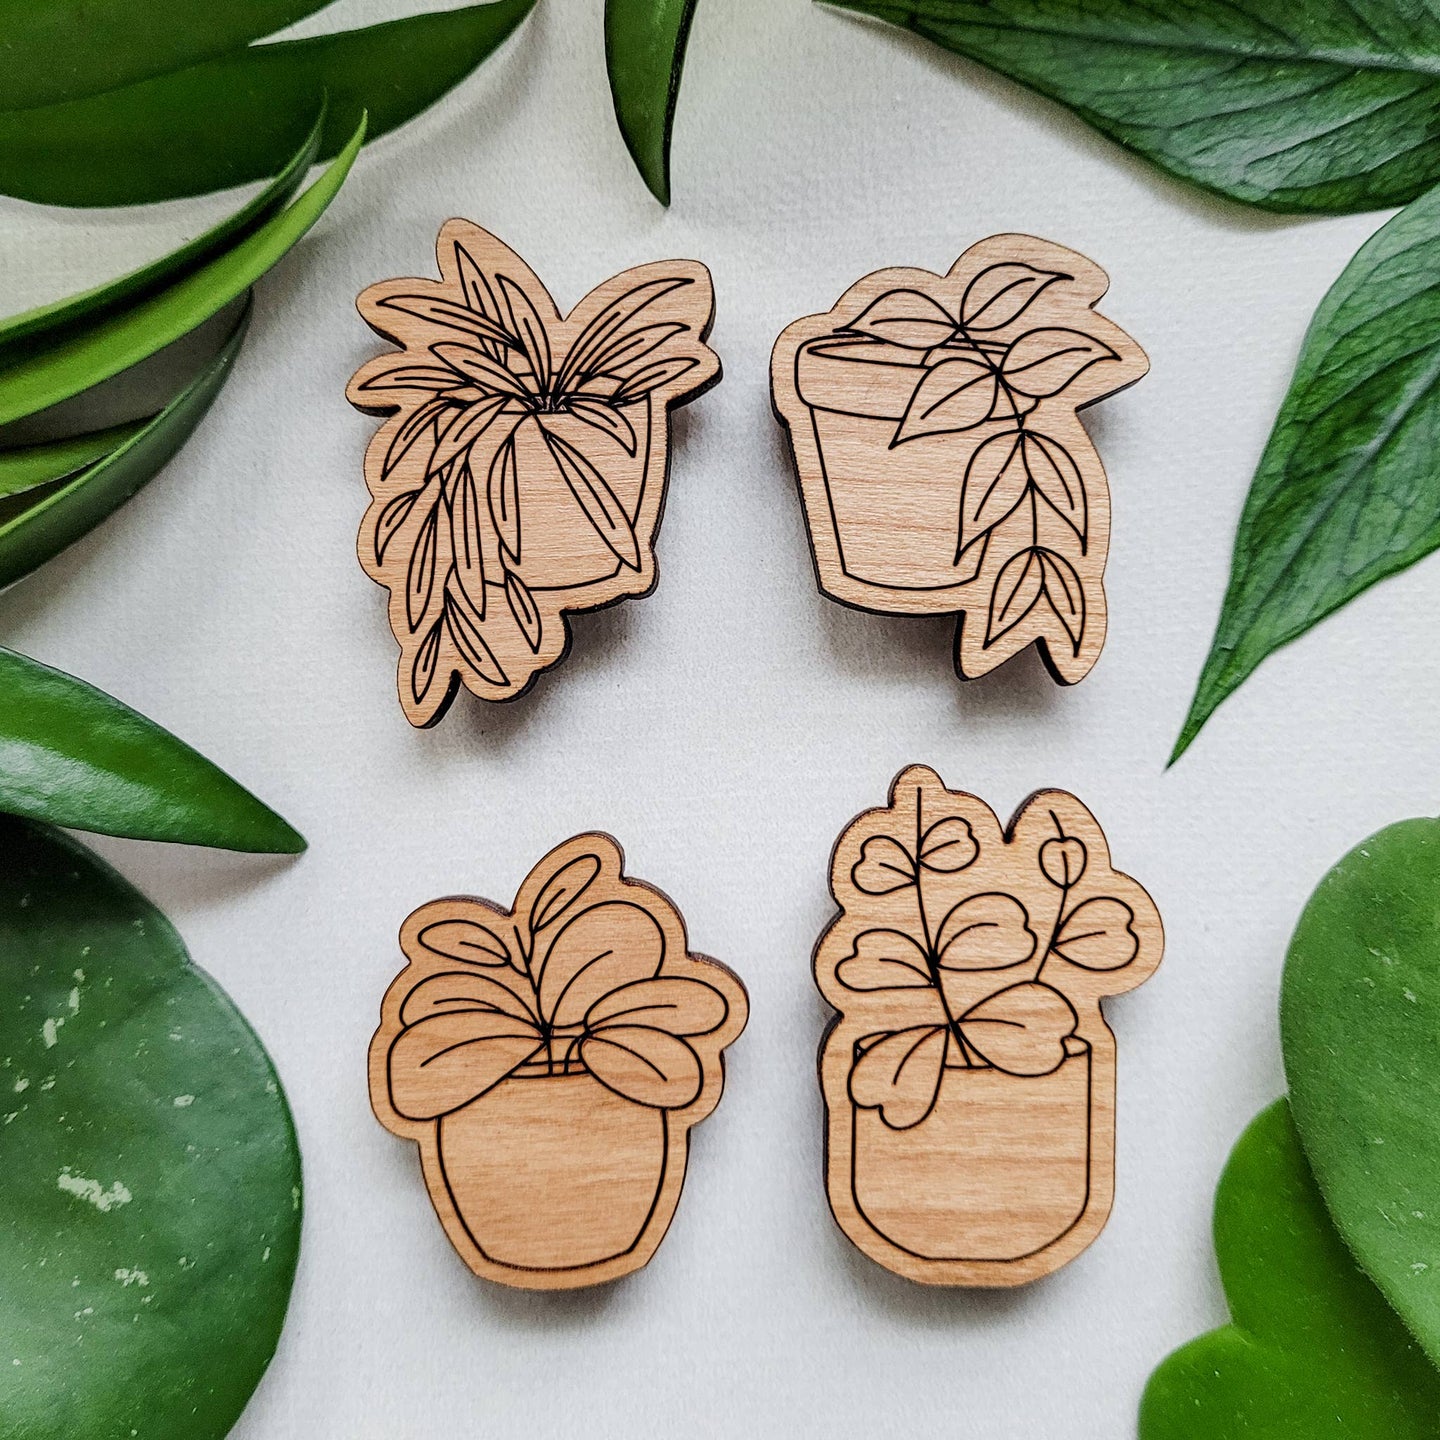 Leaf & Node - Hoya Plant Magnets (Sets of 4) - Wood Engraved